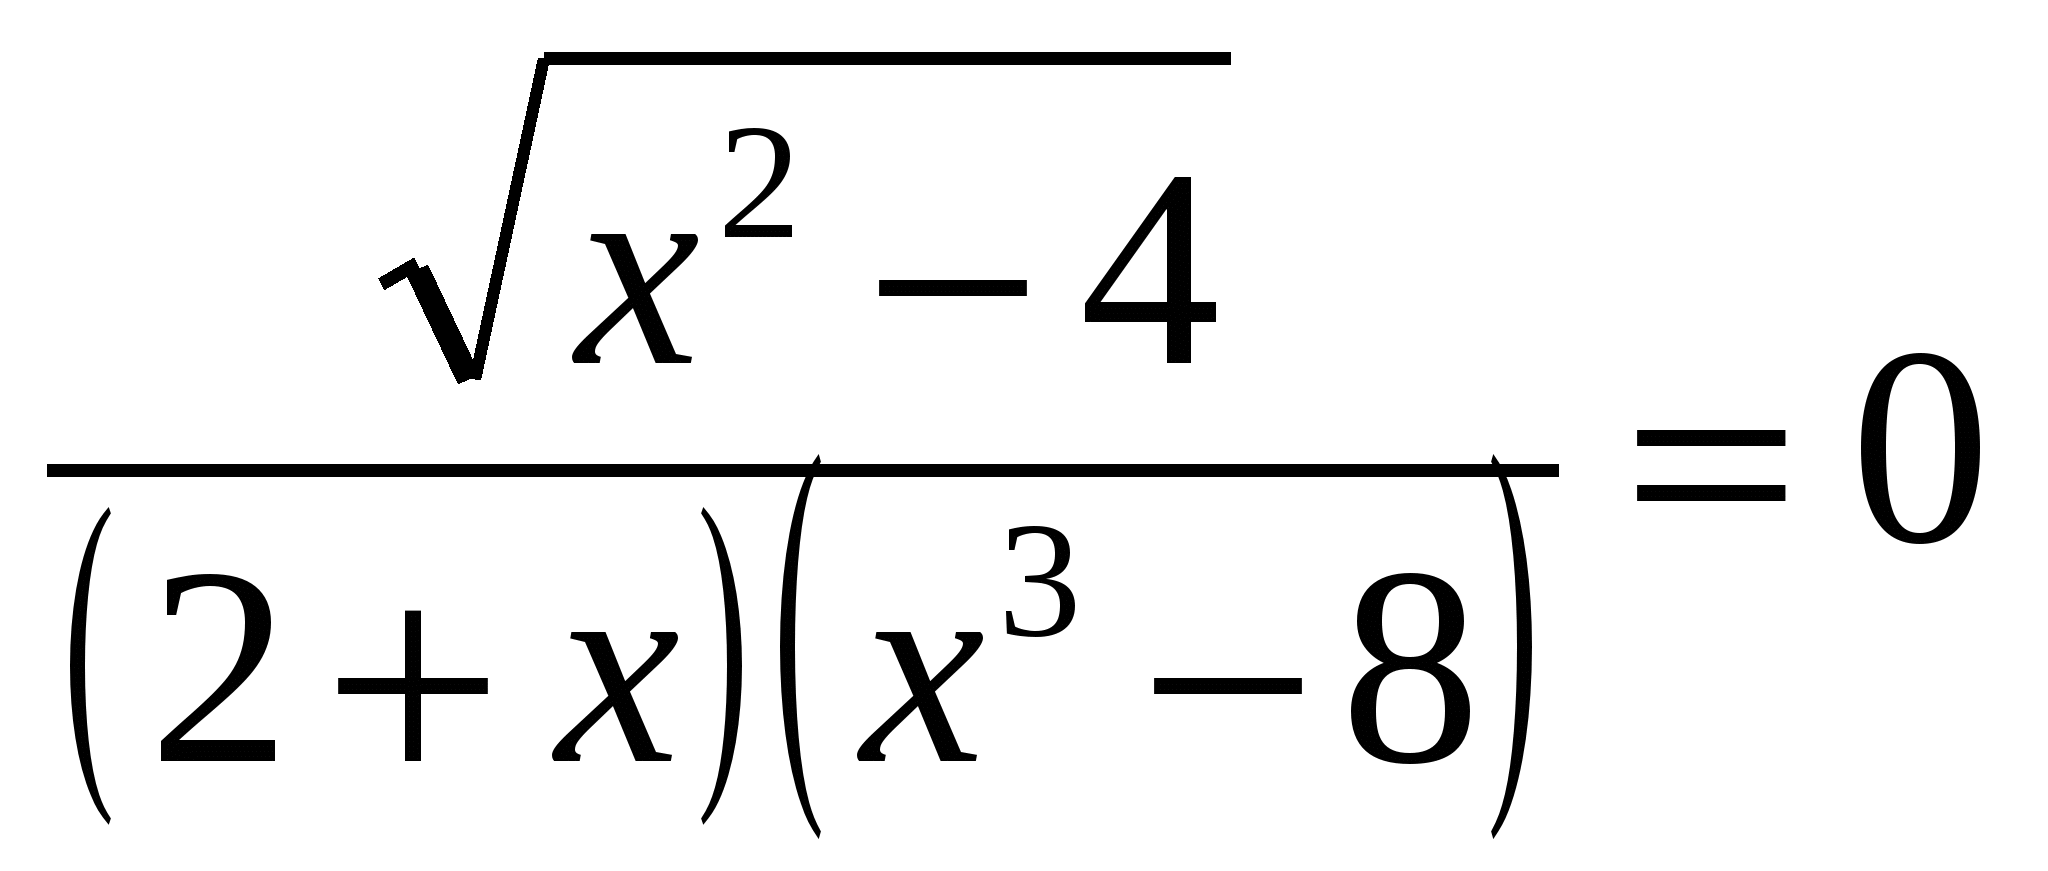 Повторение математики 11 класс. Математические уравнения 11 класс. Сложное математическое уравнение. Примеры для 11 класса по математике. Сложные уравнения.